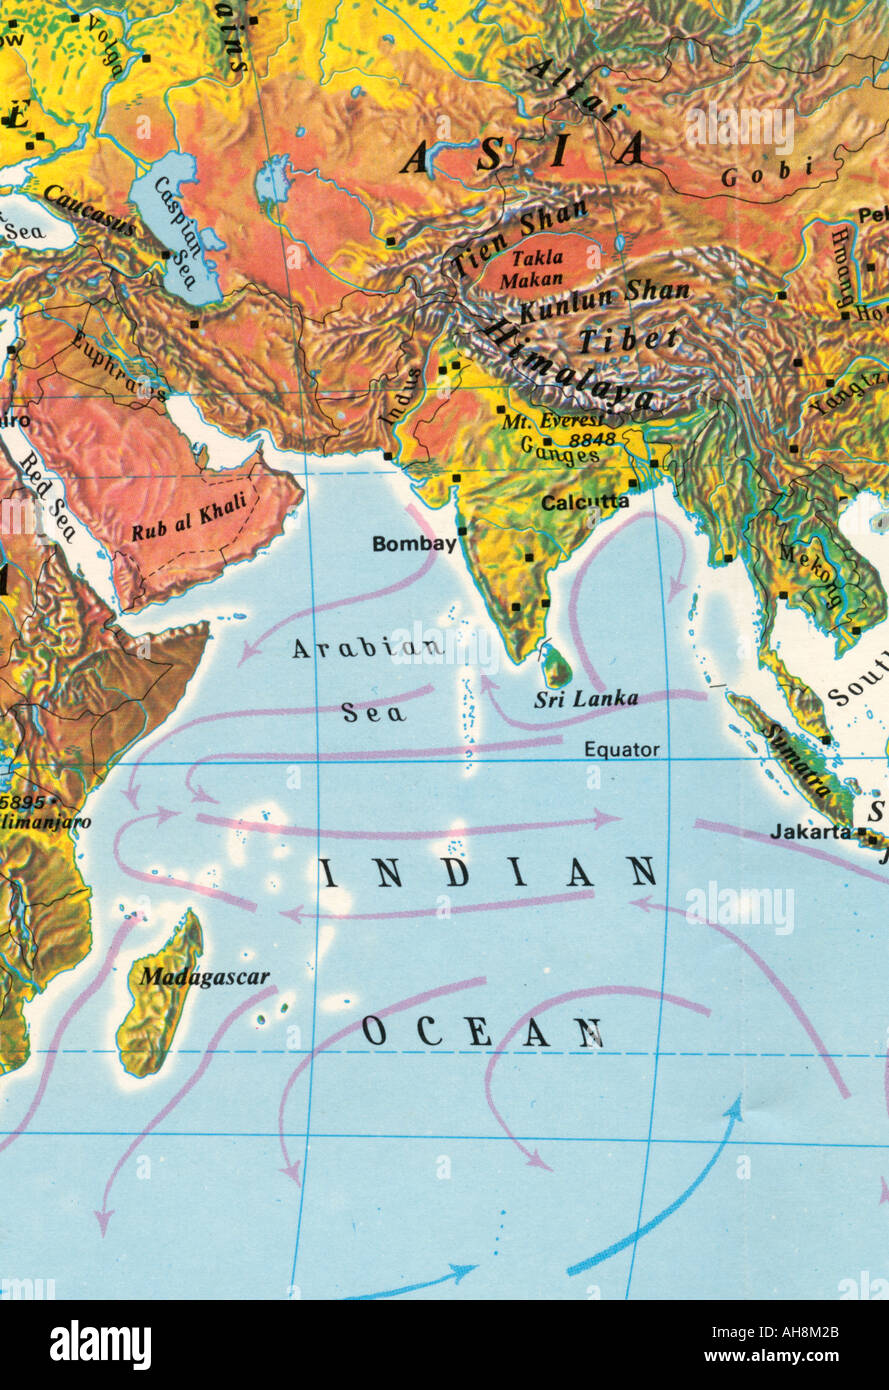 Carte de l'Inde Asie Océan Indien Mer d'Arabie Sri Lanka Équateur Madagascar Tibet carte indienne Banque D'Images